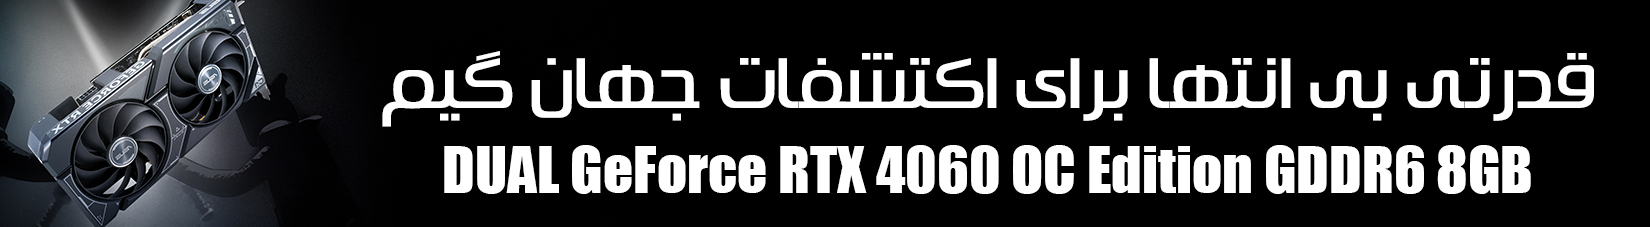 کارت گرافیک ایسوس DUAL GeForce RTX 4060 OC Edition GDDR6 8GB ظرفیت 8 گیگابایت